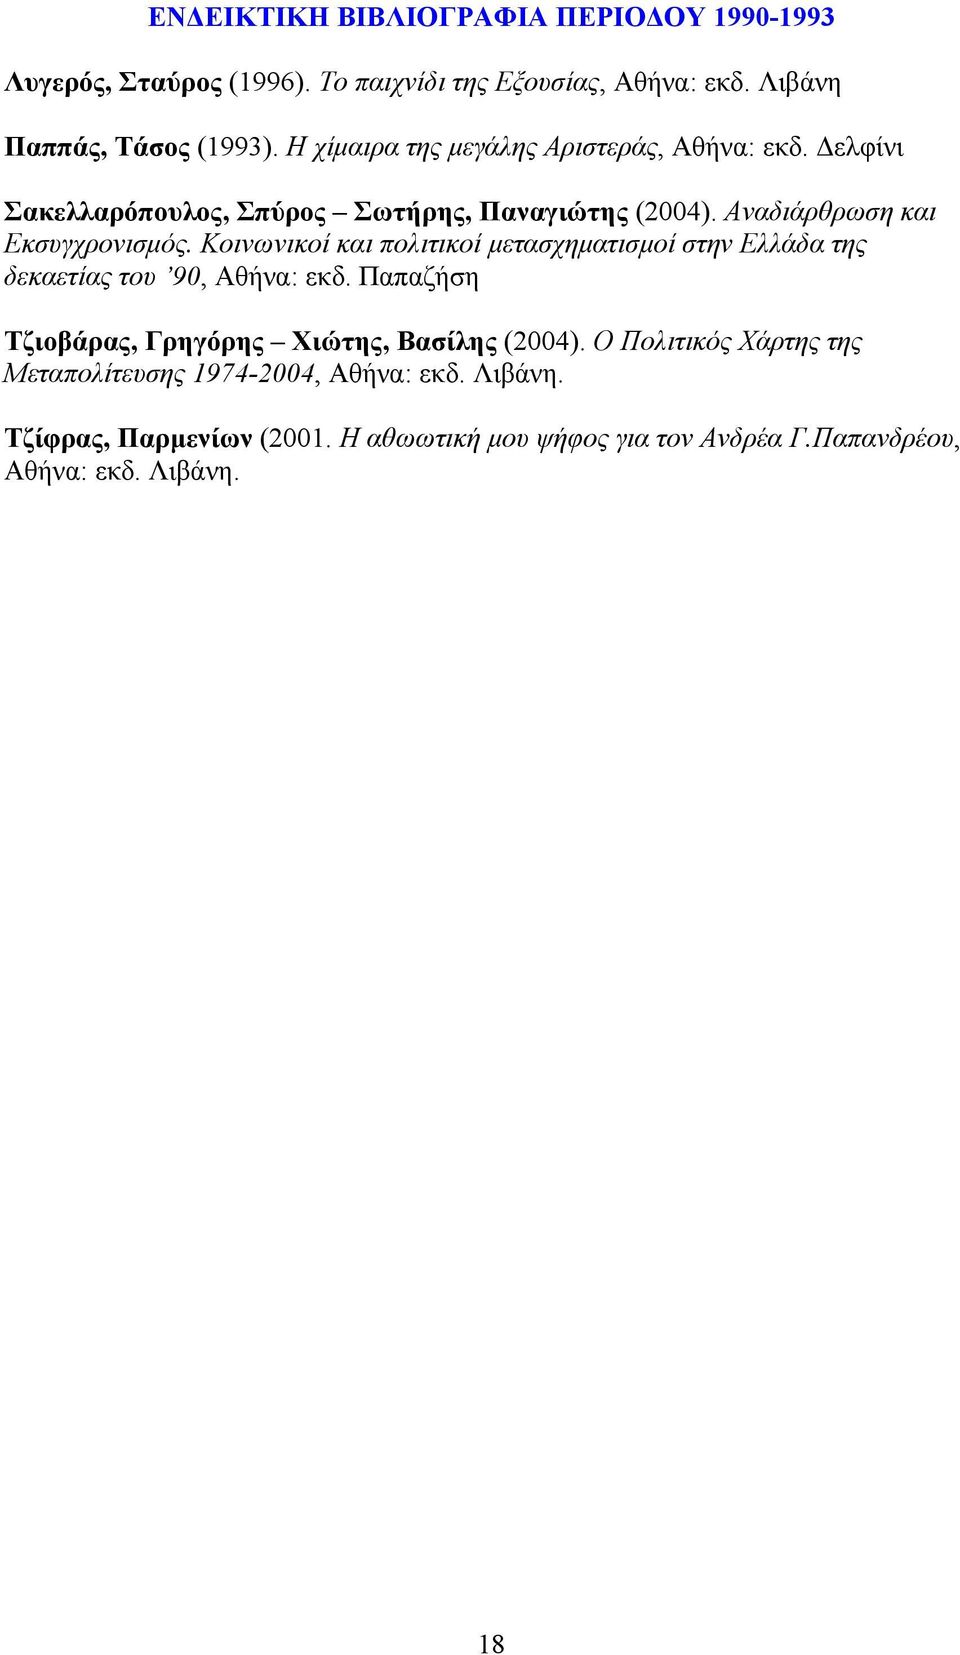 Κοινωνικοί και πολιτικοί μετασχηματισμοί στην Ελλάδα της δεκαετίας του 90, Αθήνα: εκδ. Παπαζήση Τζιοβάρας, Γρηγόρης Χιώτης, Βασίλης (2004).